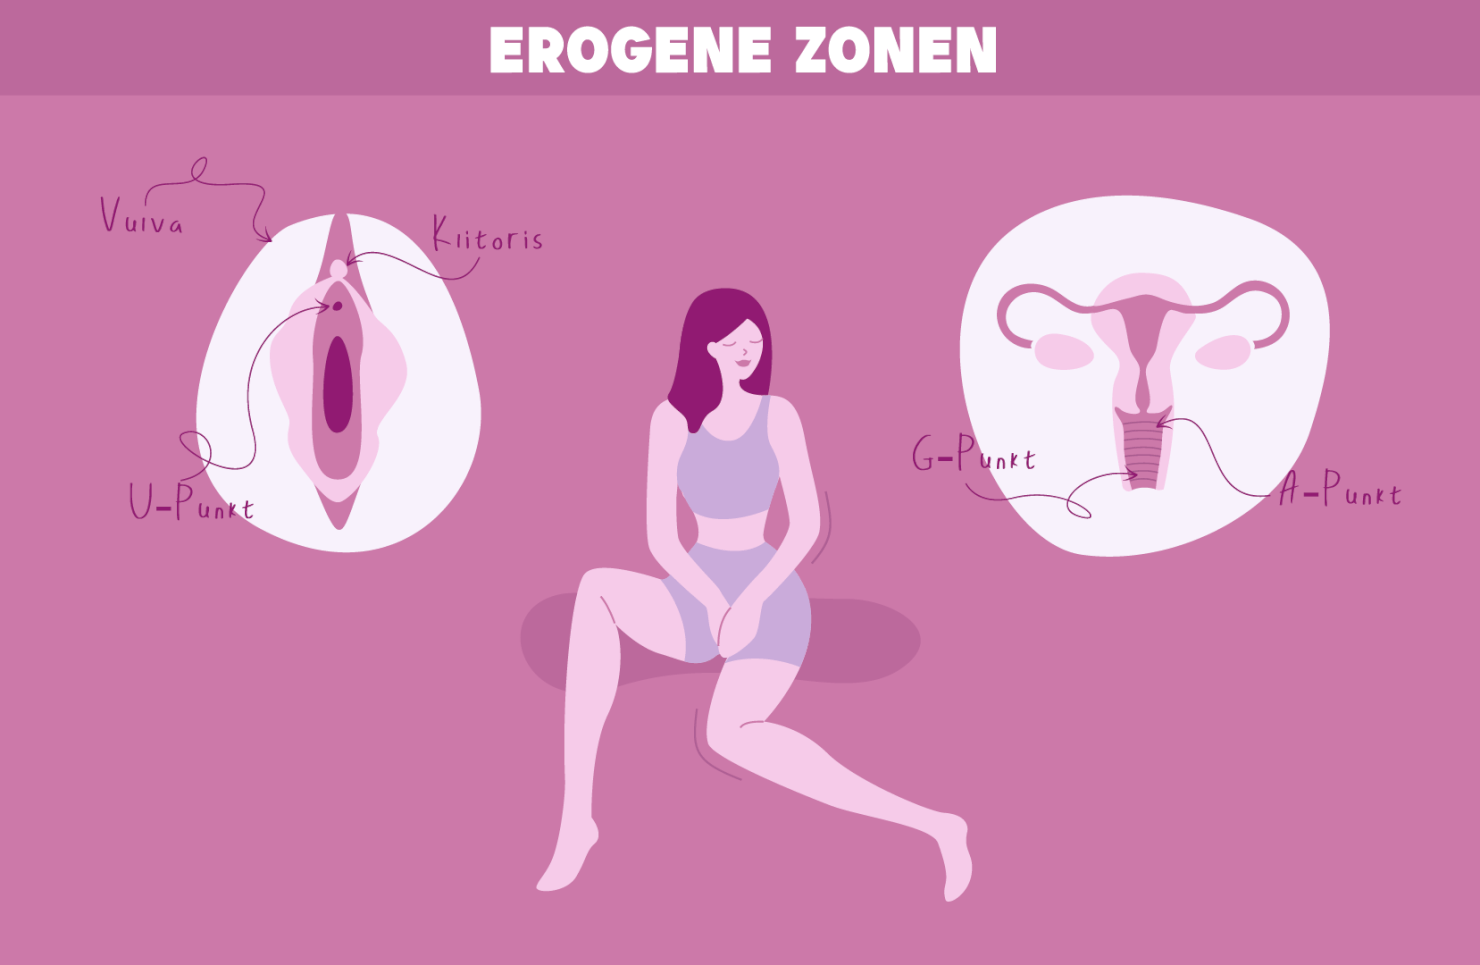 Erogene Zonen von Frauen Klitoris G Punkt A Spot U Punkt Vulva.